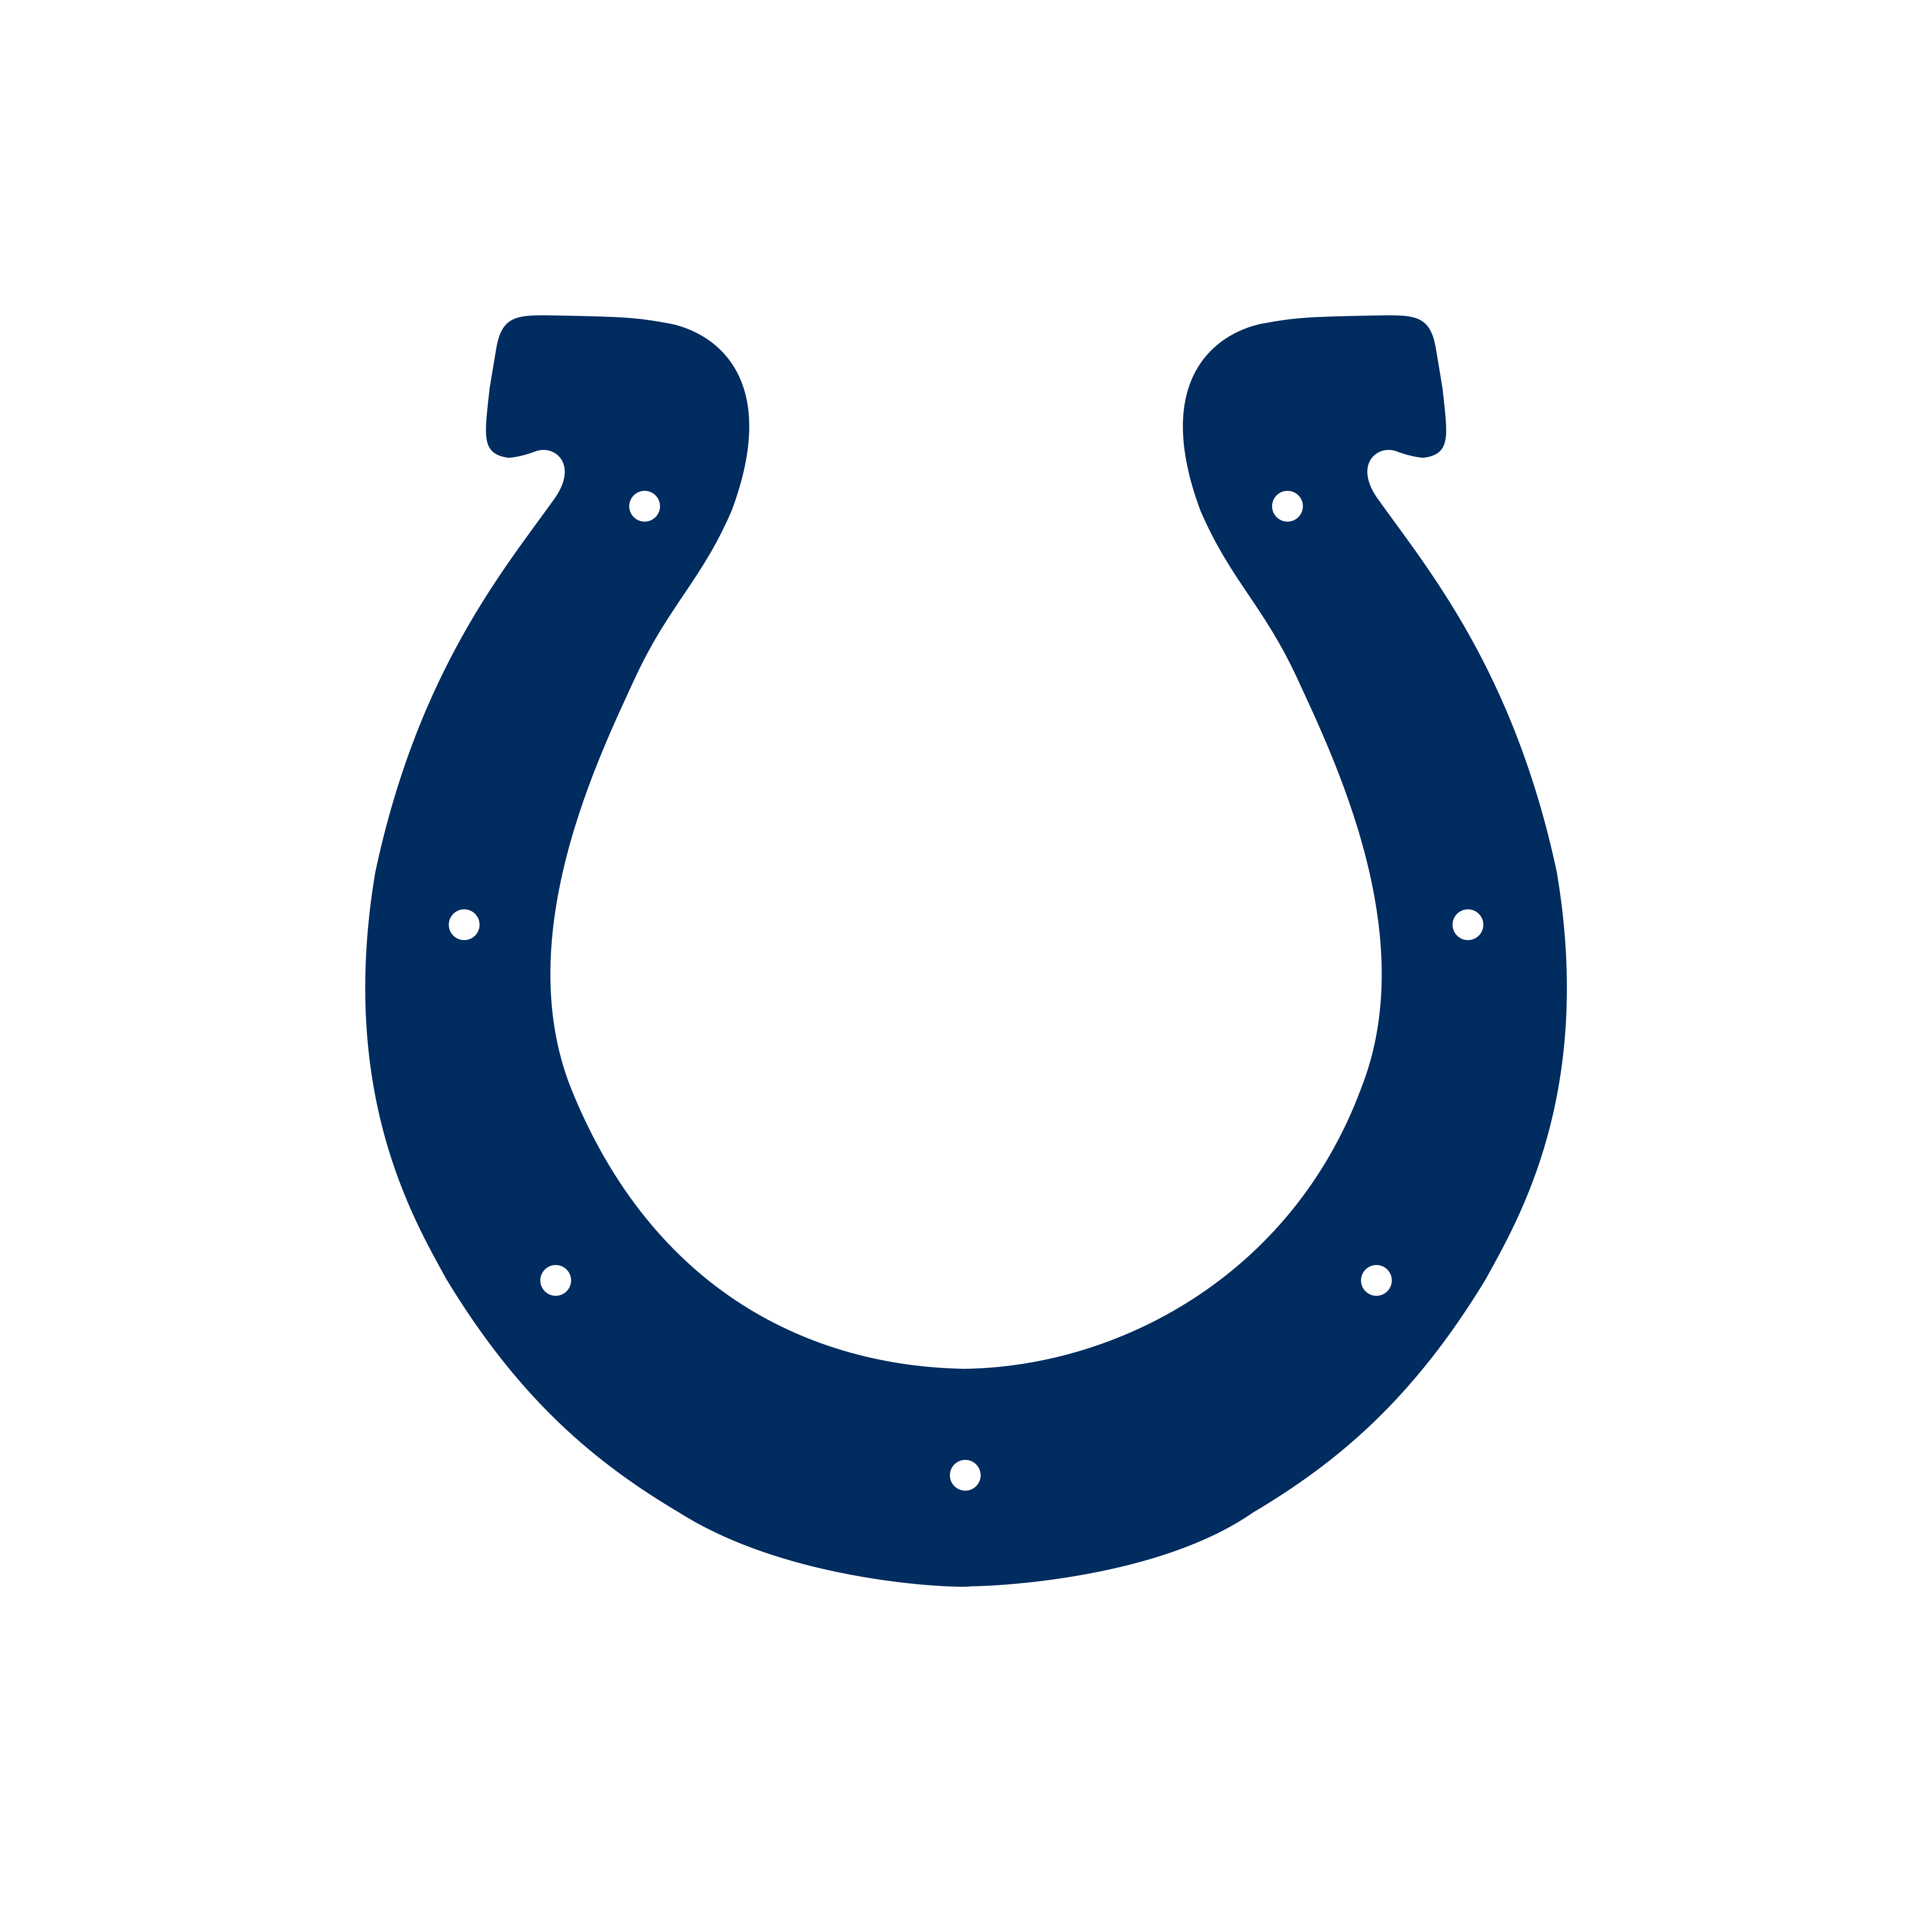 indianapolis colts logo 0 - Indianapolis Colts Logo